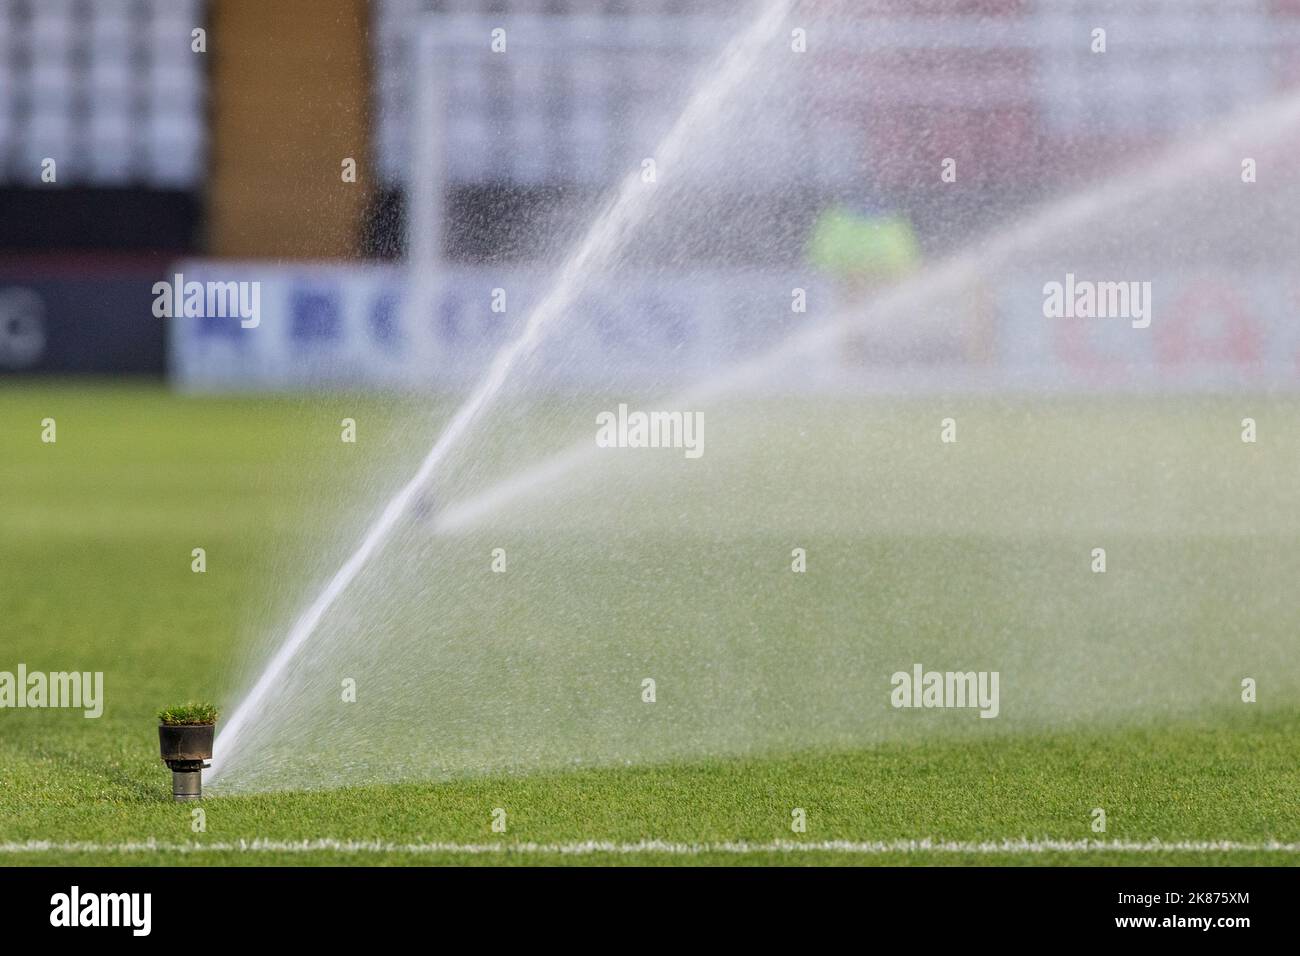 Pop-up-Sprinkler, die Wasser auf den Platz im englischen Fußballstadion der unteren Liga sprühen. Stockfoto